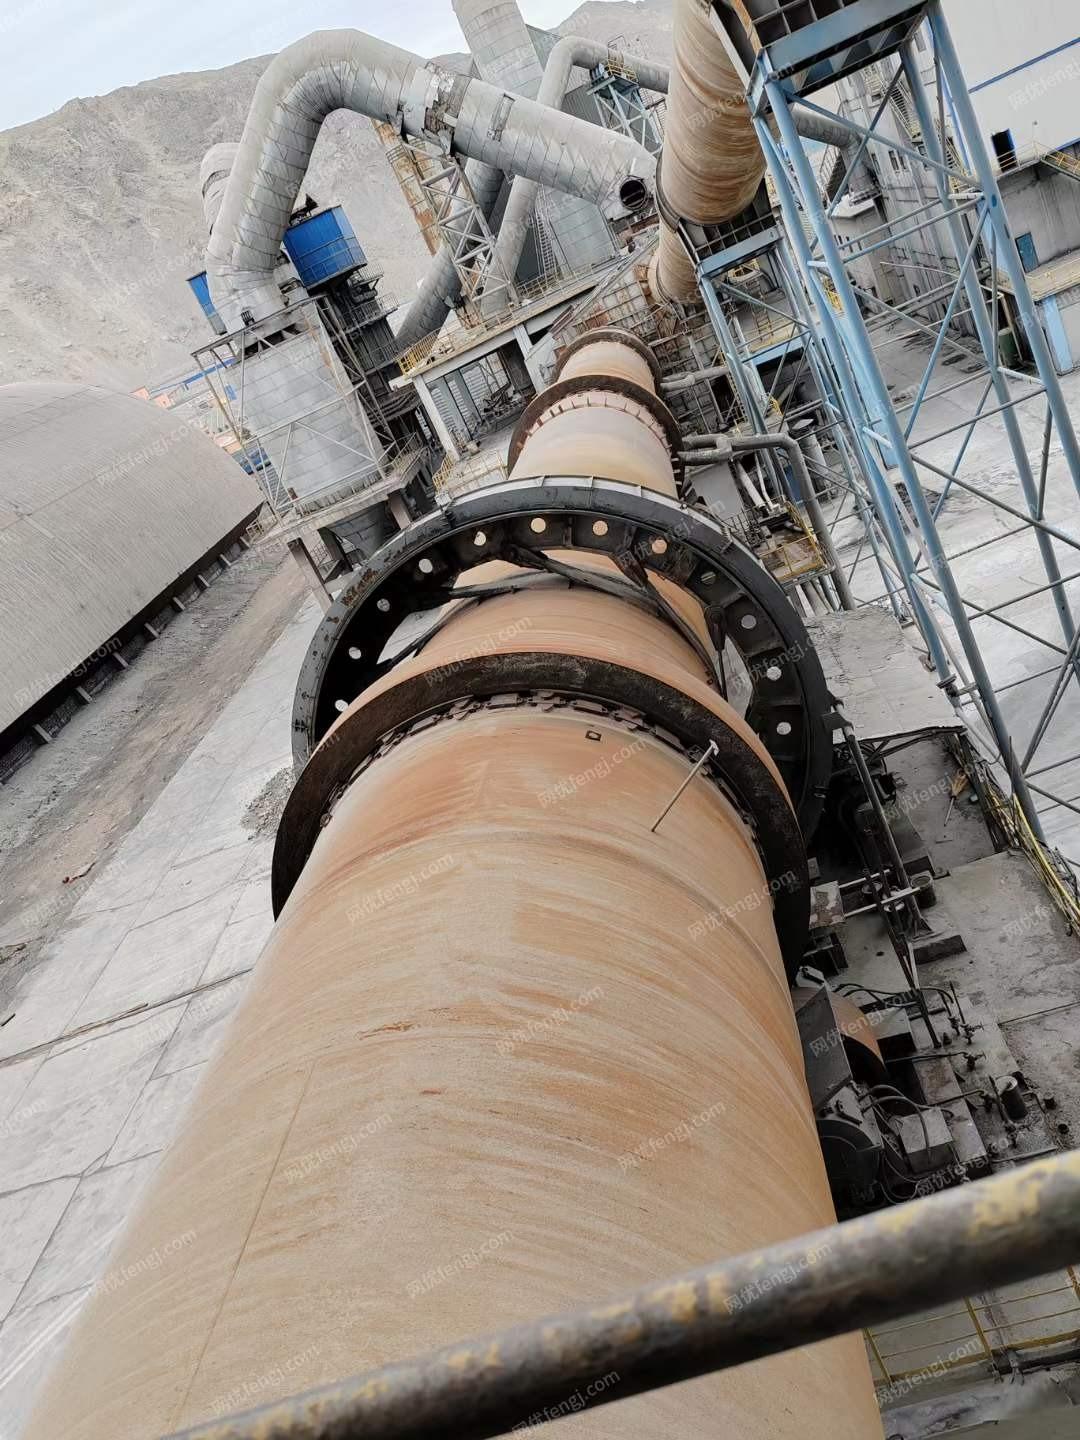 出售日产五千吨水泥生产线回转窑4.8×72米，立磨4.8米，煤磨3.8x11米，全厂熟料生产线设备